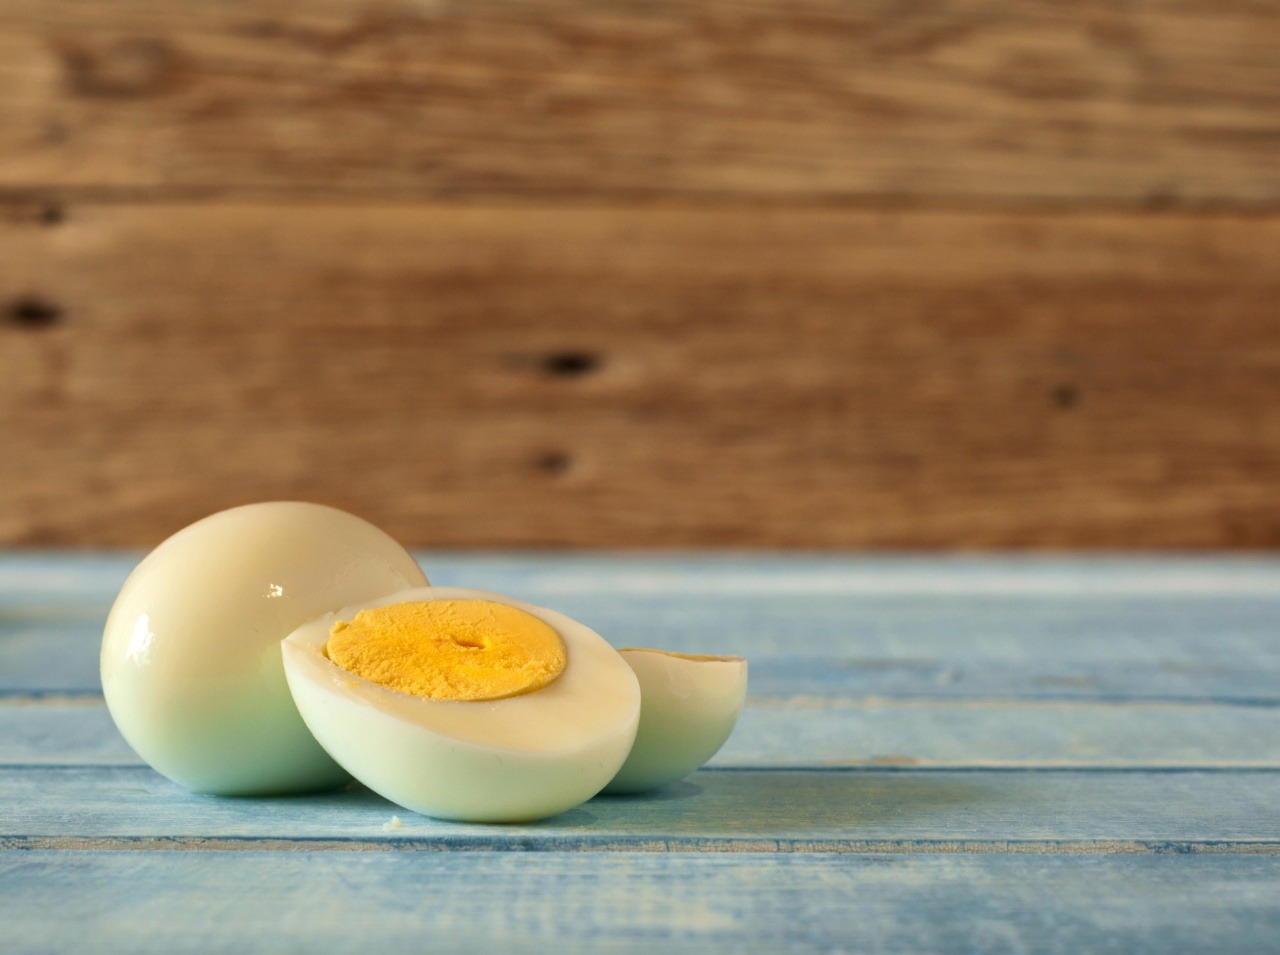 Je výživnejší bielok alebo žĺtok? Ak si neviete vybrať, pokojne si doprajte vajíčok, čo si hrdlo ráči. 